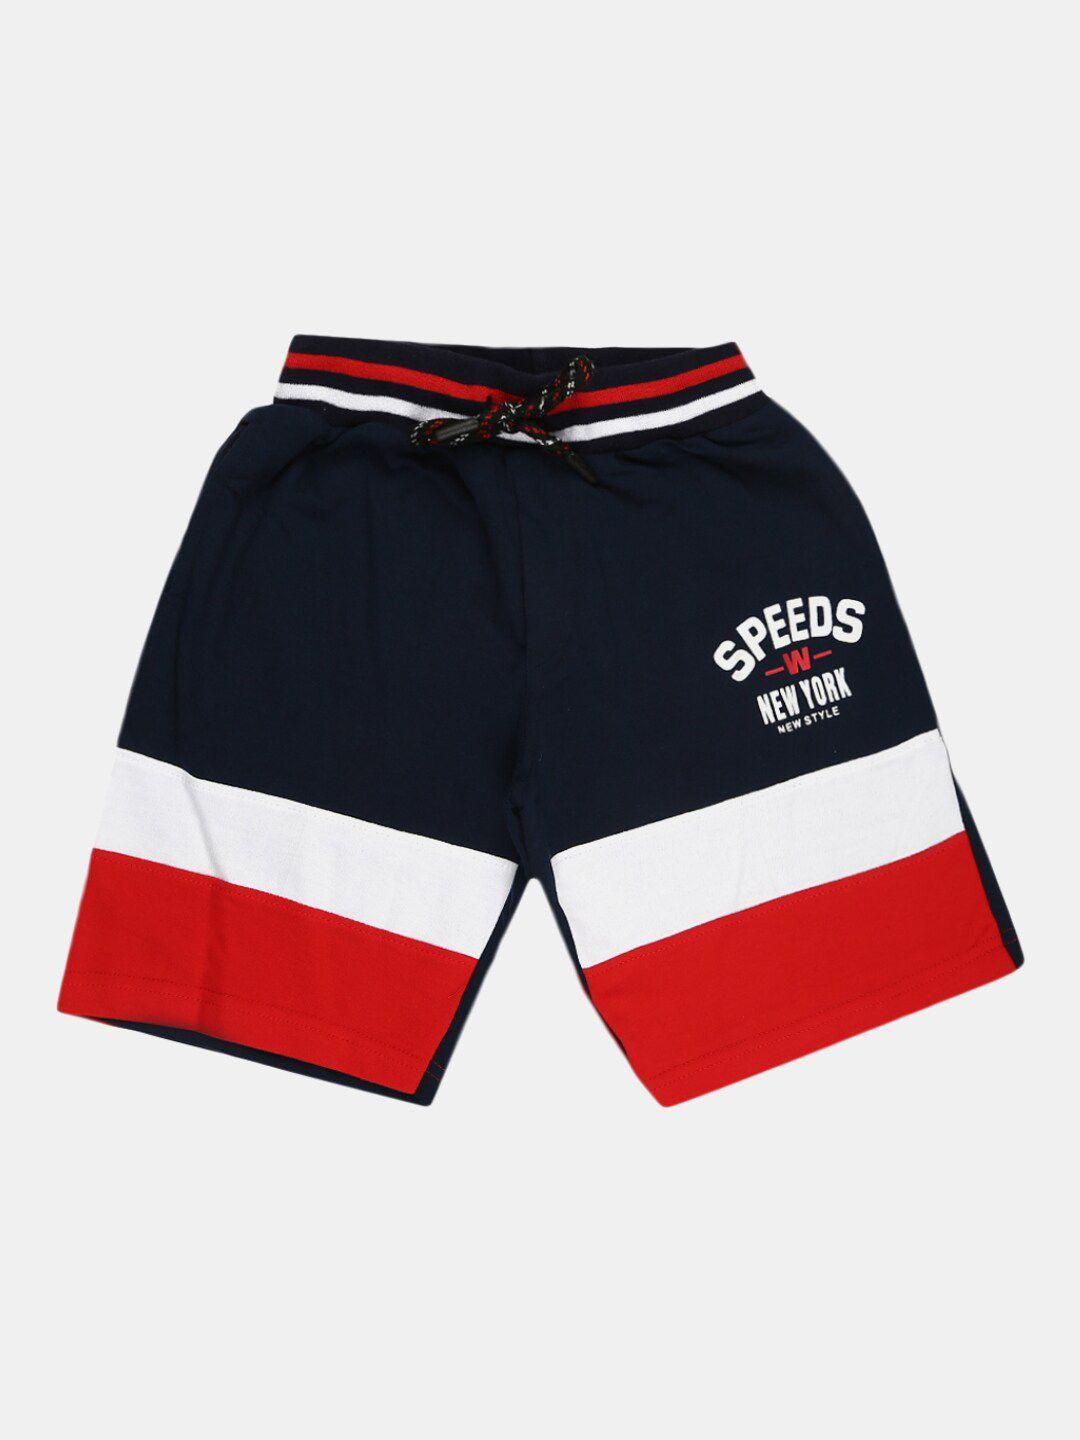 v-mart boys navy blue colourblocked shorts